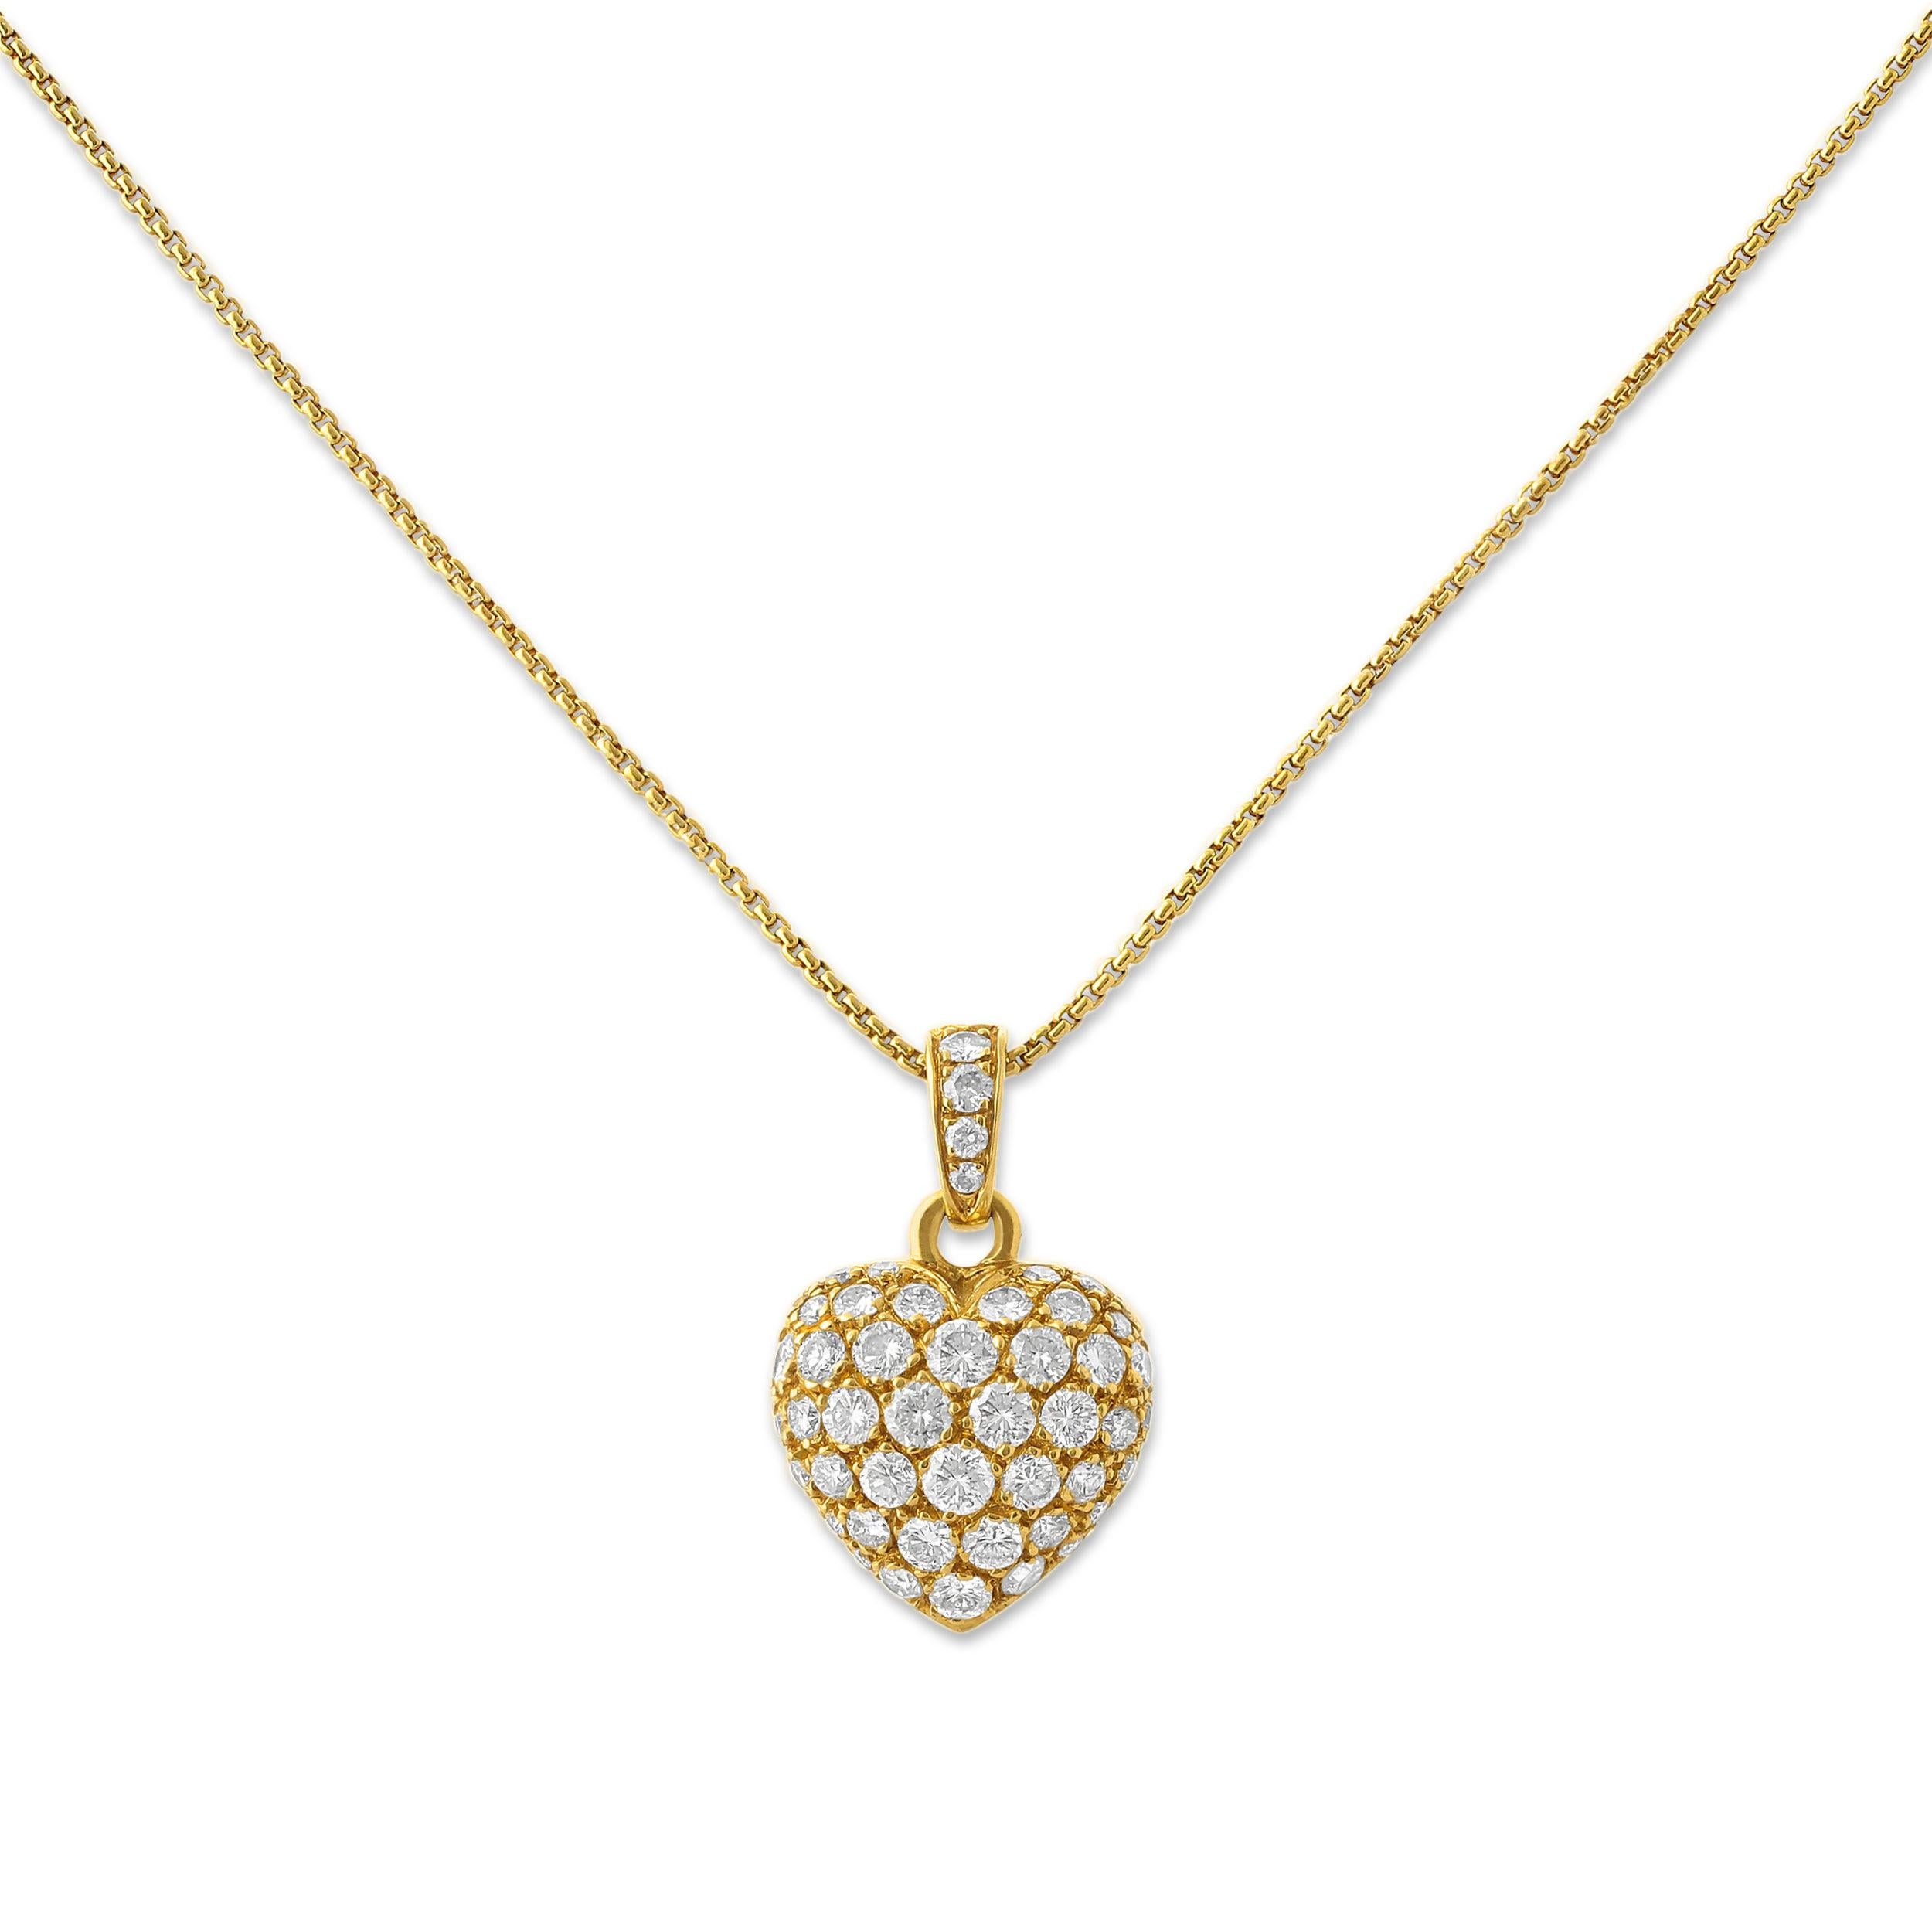 Un pendentif contemporain en or et diamants en forme de cœur par Cartier. Réalisé en or jaune 18 carats, ce cœur délicat est serti en pavé d'environ 1,25 carats de diamants et suspendu à une chaîne simple.